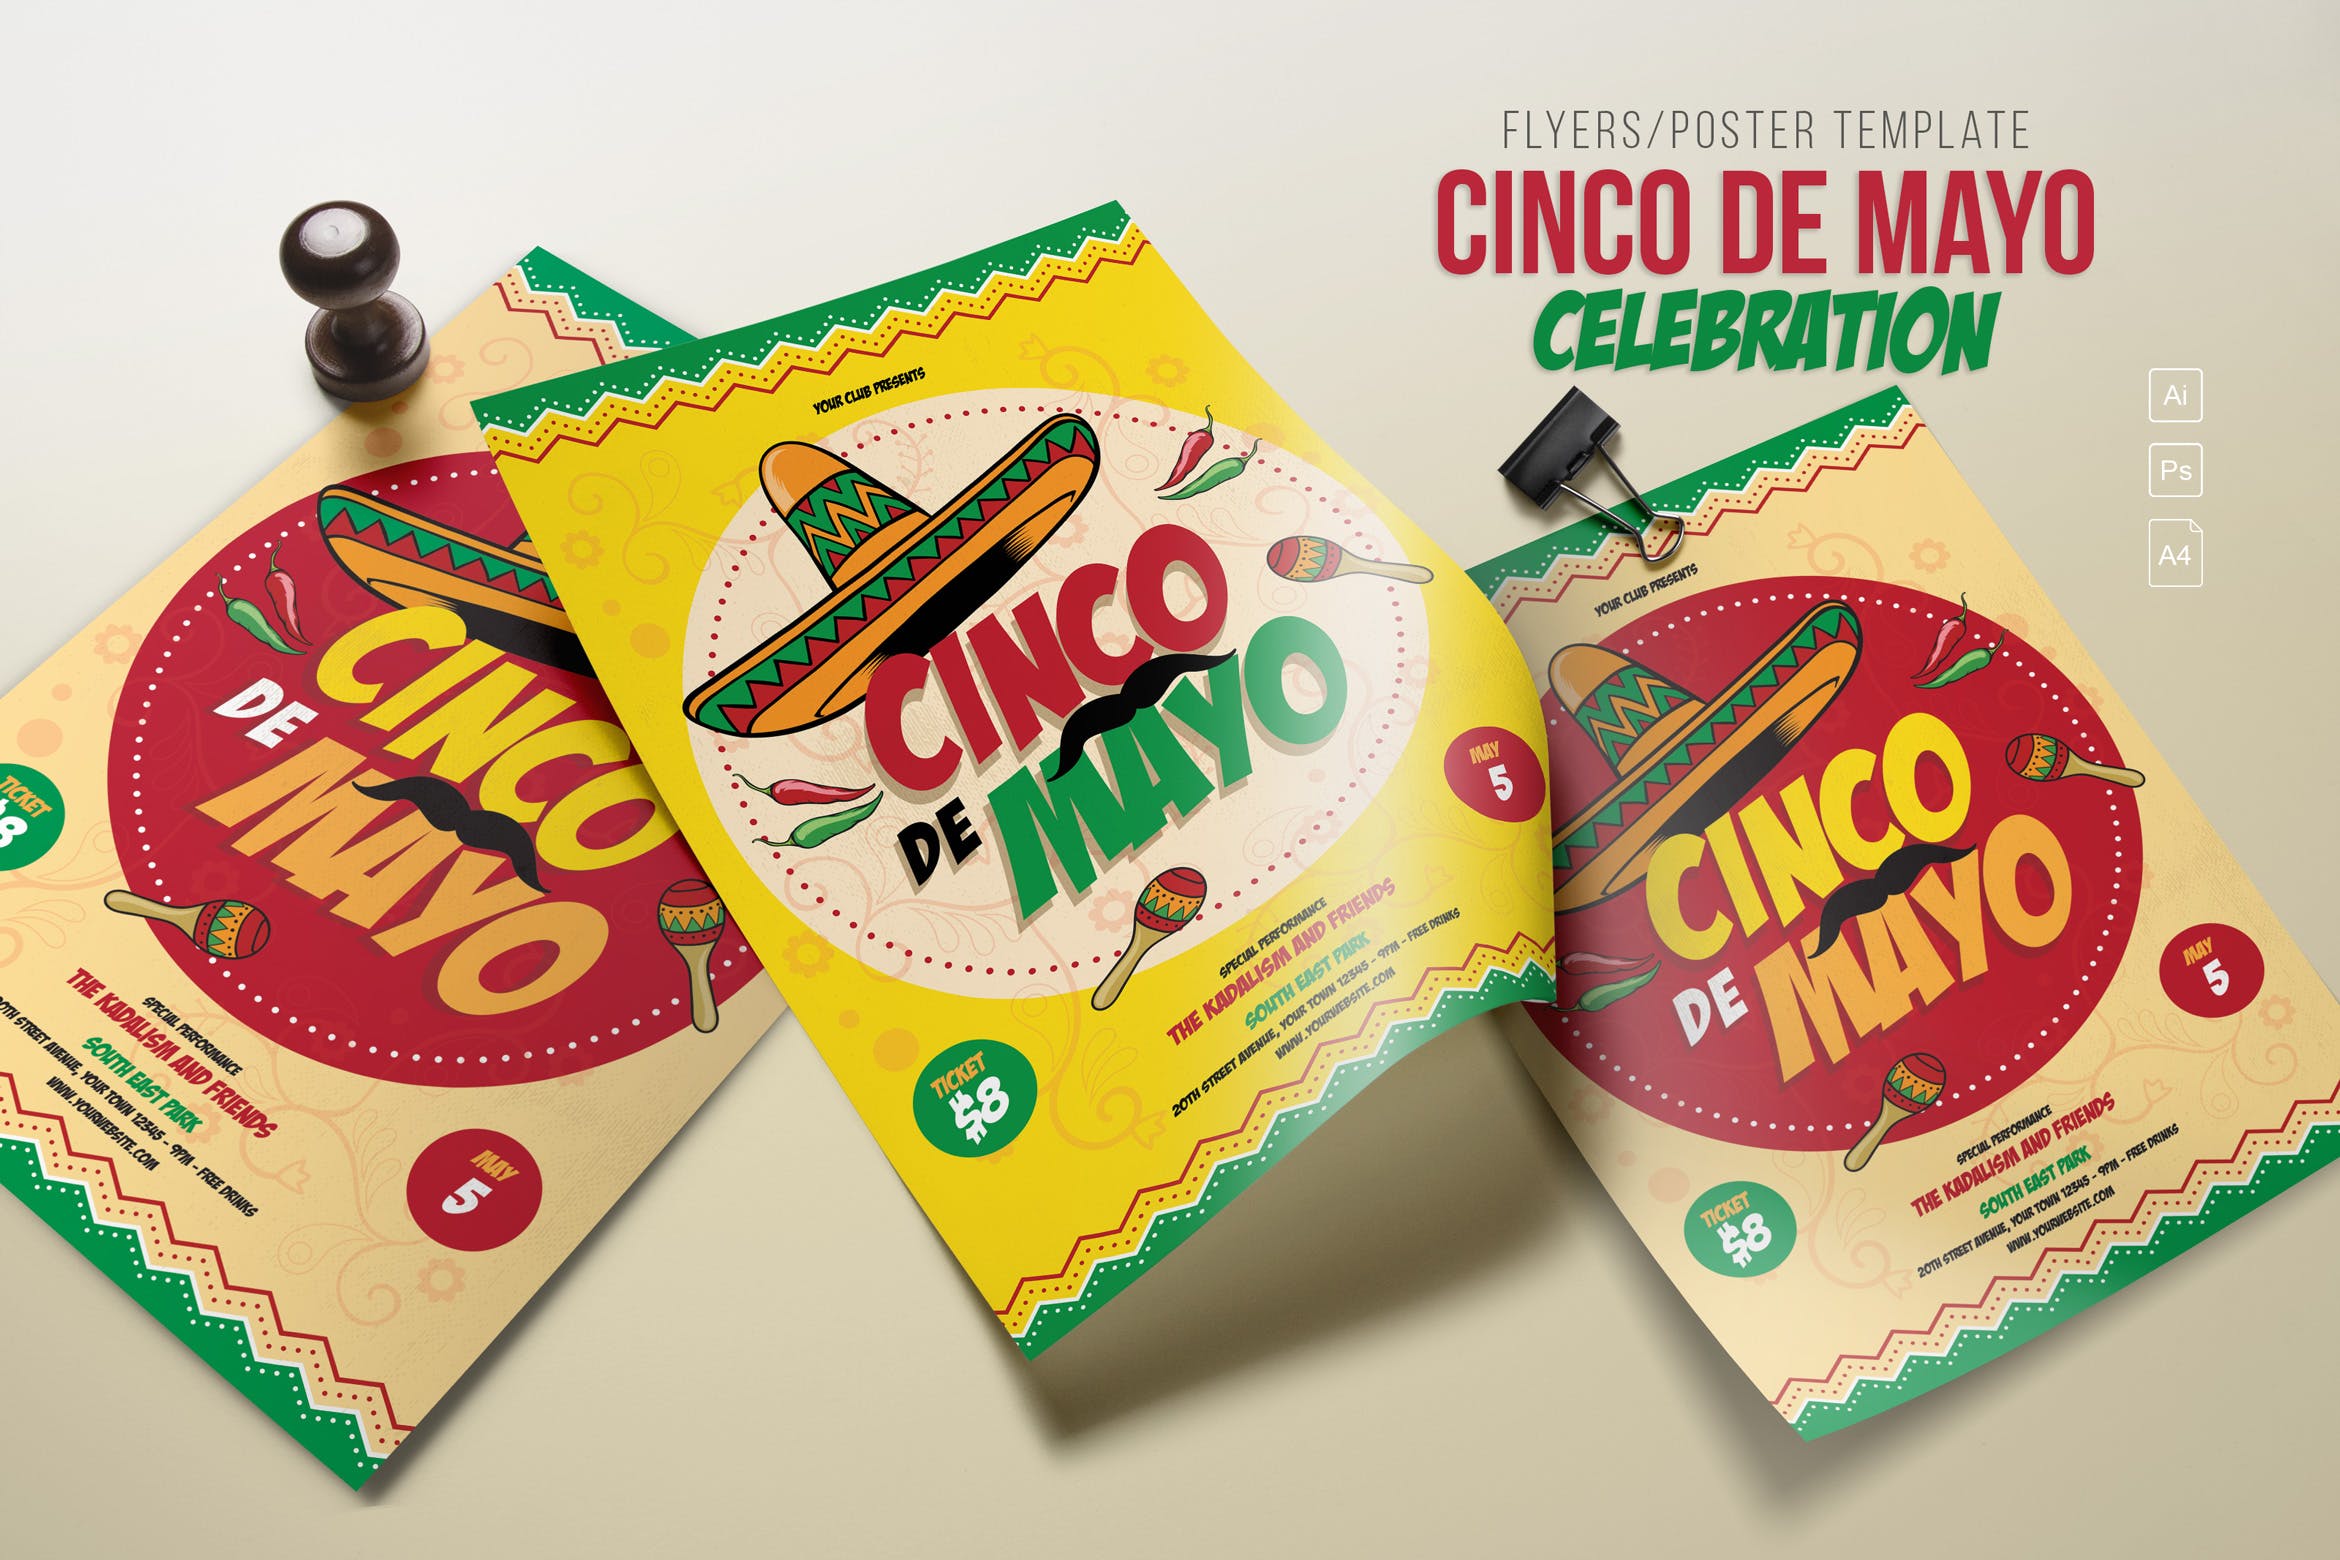 五月五日墨西哥爱国主义节日庆祝活动海报PSD素材第一素材精选模板 Cinco de Mayo Celebration插图